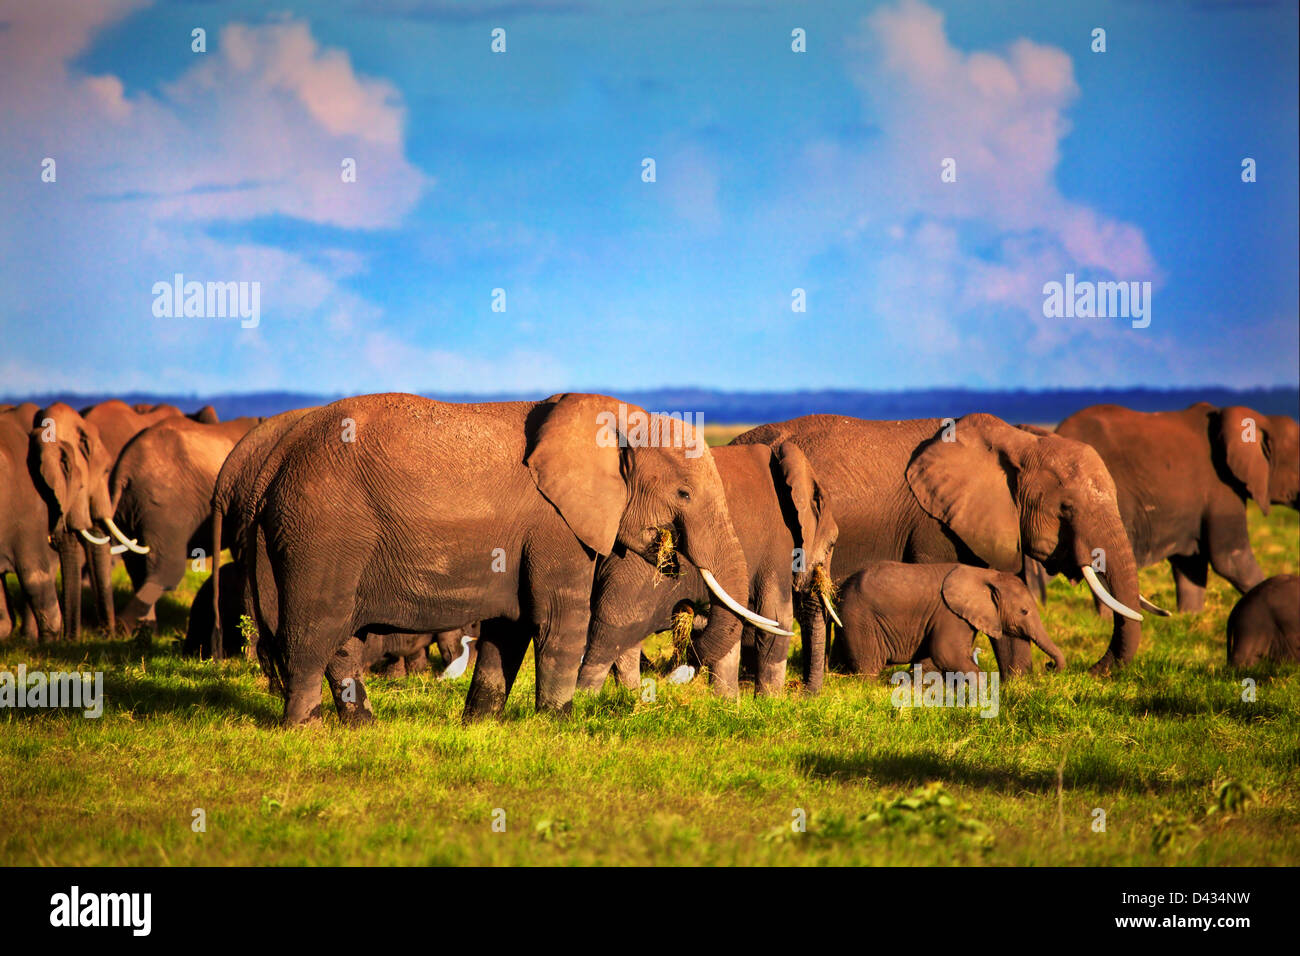 L'éléphant d'éléphants - troupeau de savane africaine, Safari dans le Parc national Amboseli au Kenya, d'Afrique (Loxodonta africana) Banque D'Images